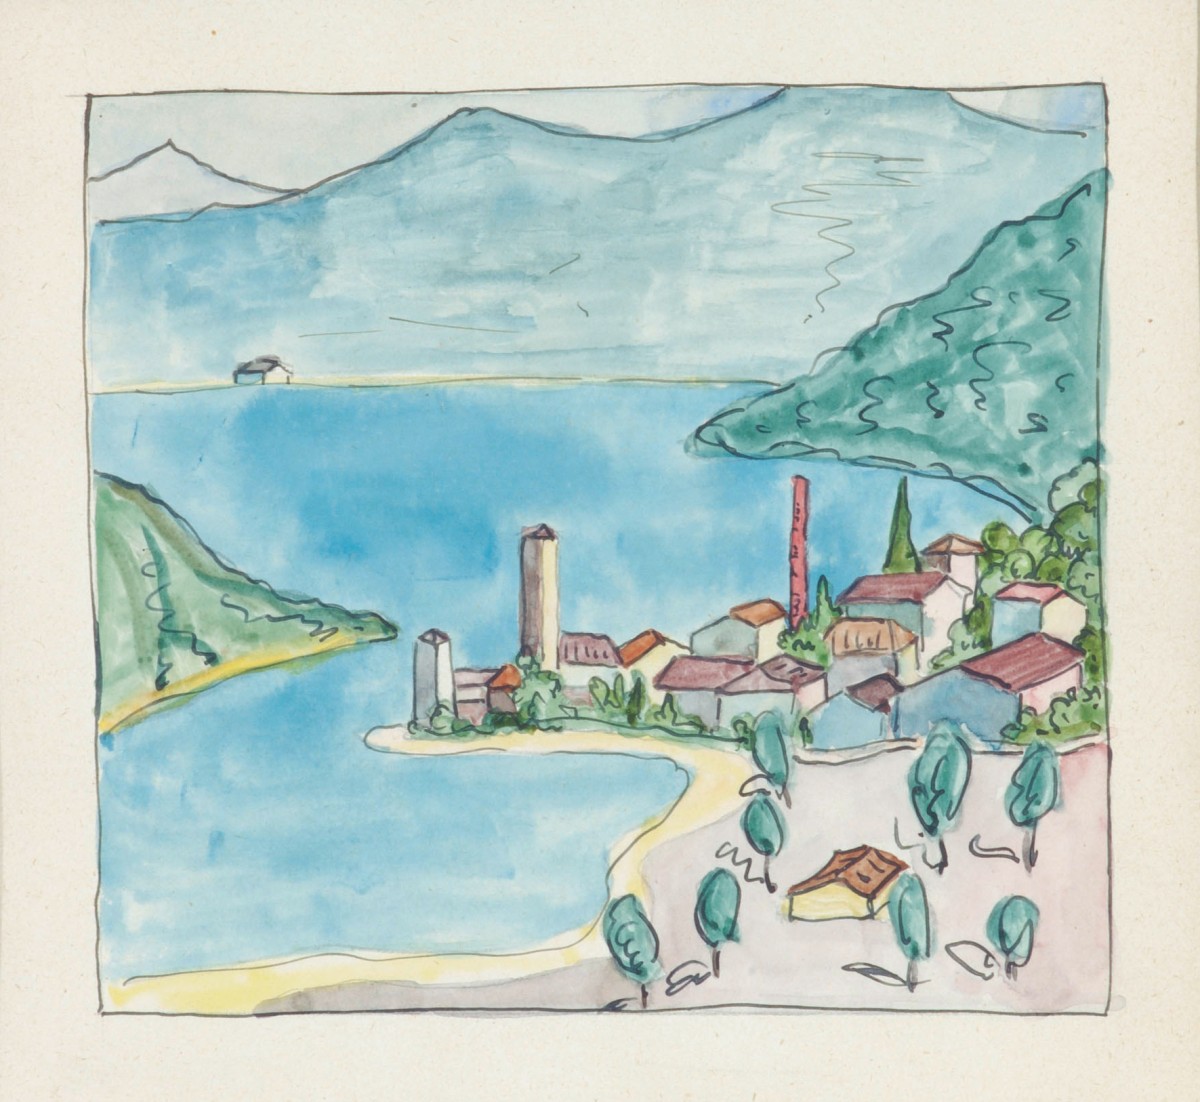 Hermann Hesse, Blick auf Lavena am Luganer See, ca. 1925, Aquarell und Tusche, 25,8 x 17,7 cm, Sammlung Würth, Inv. 8173